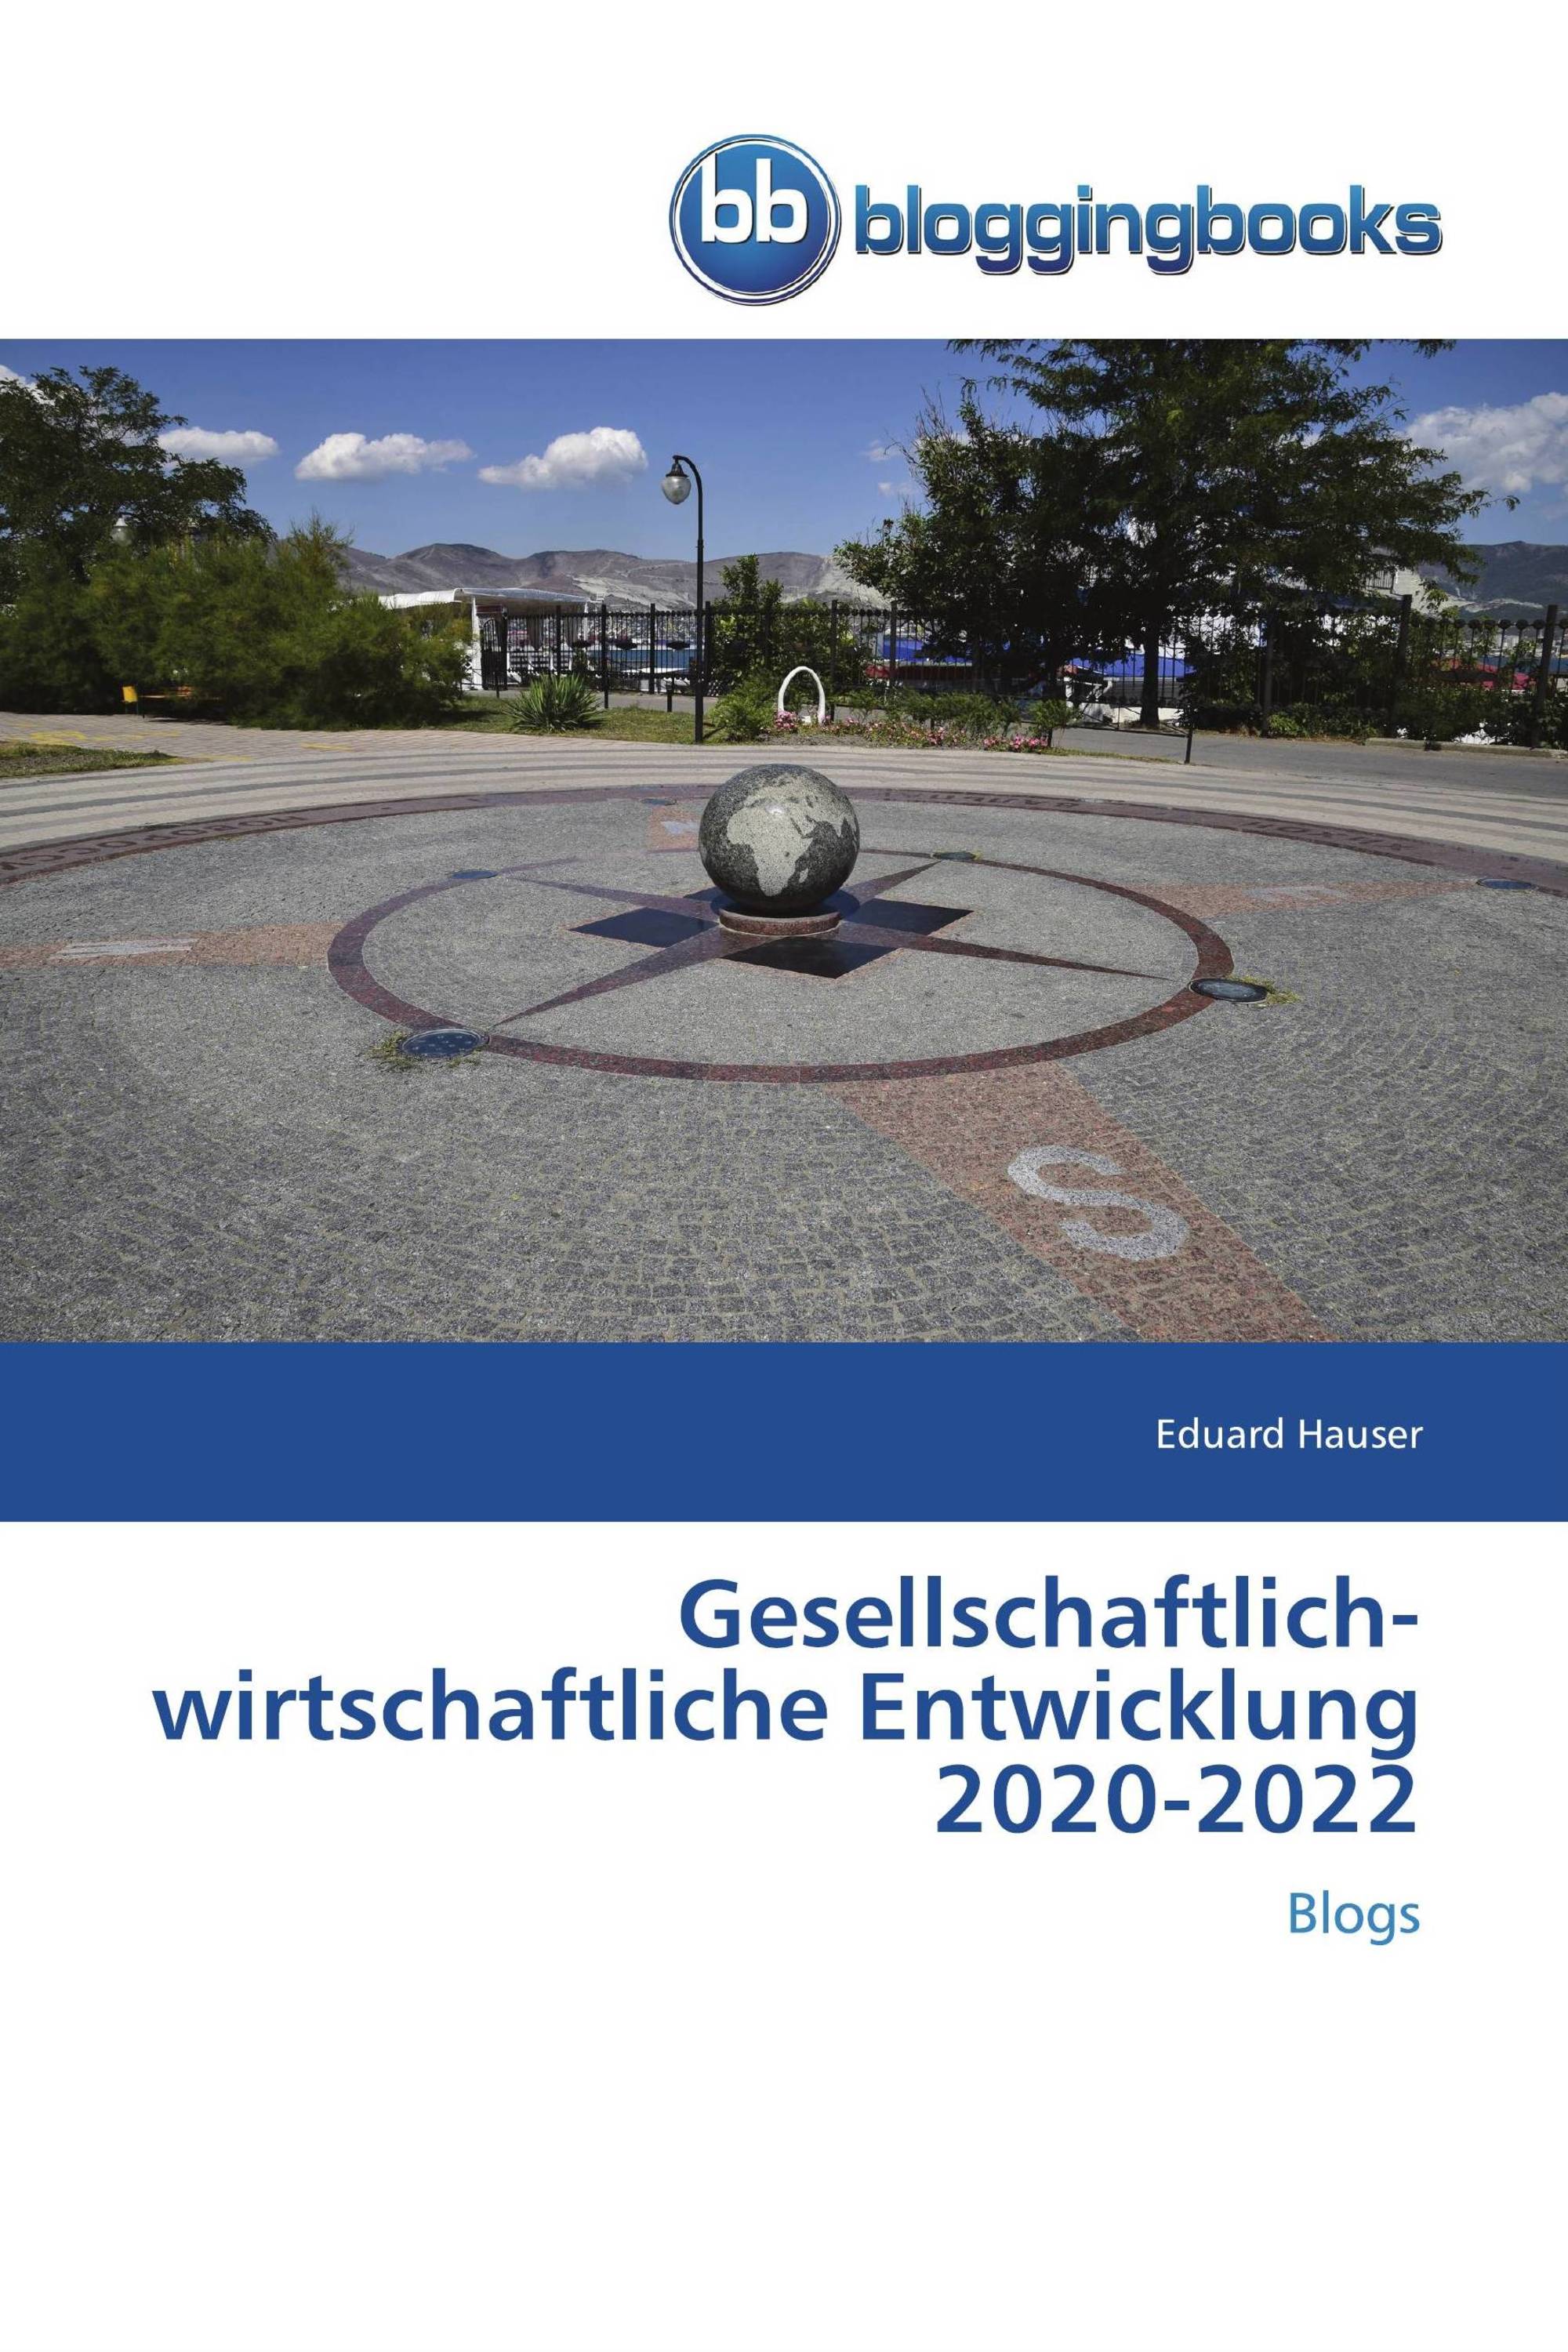 Gesellschaftlich-wirtschaftliche Entwicklung 2020-2022